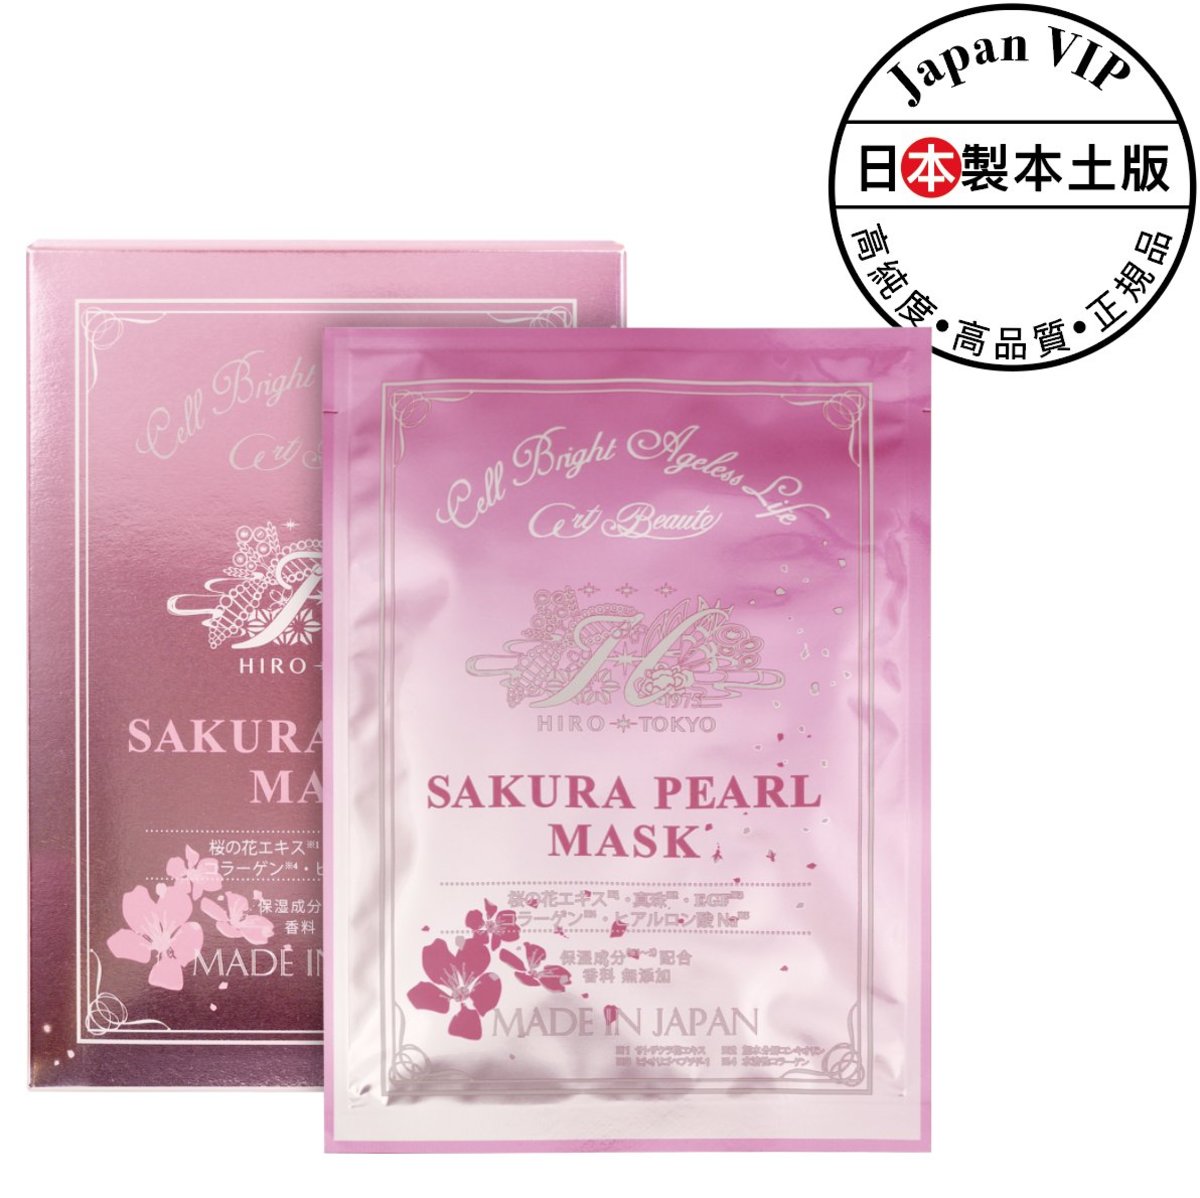 Sakura Pearl Mask